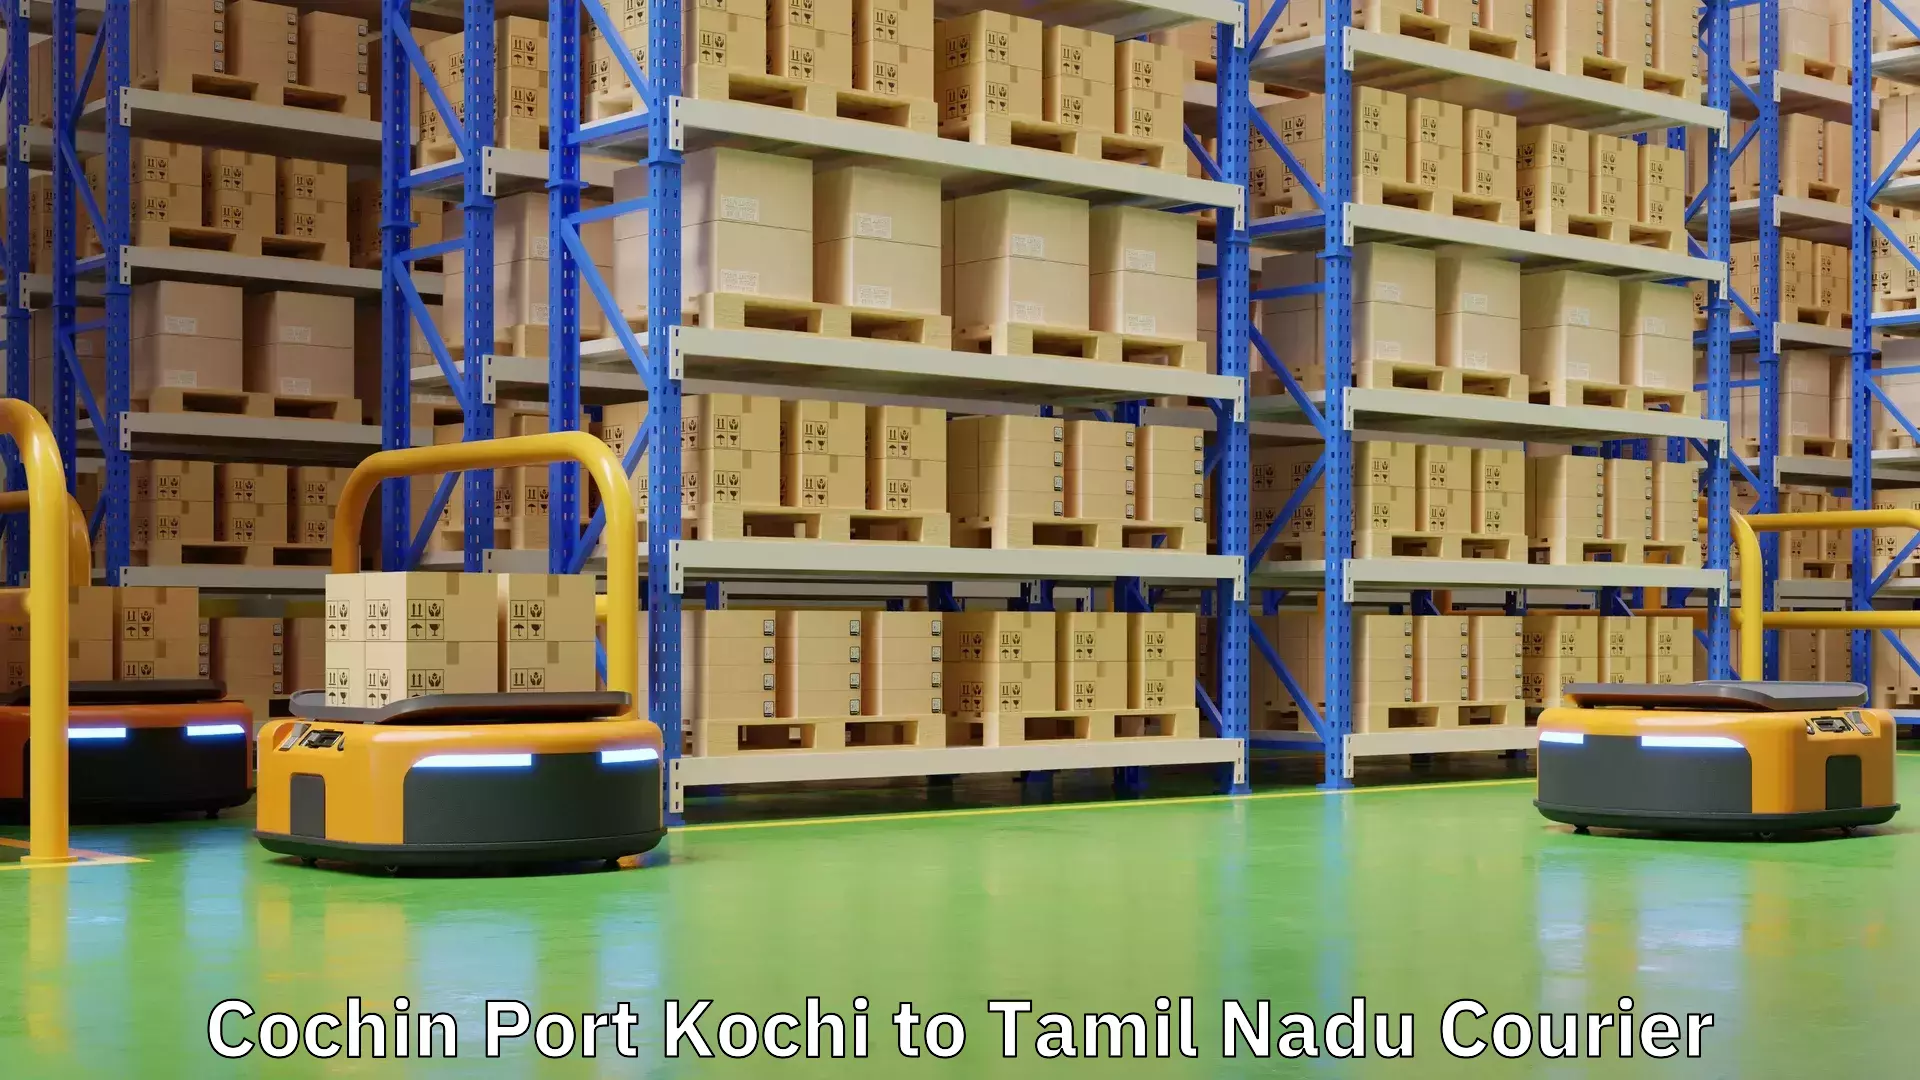 Express postal services Cochin Port Kochi to Tamil Nadu